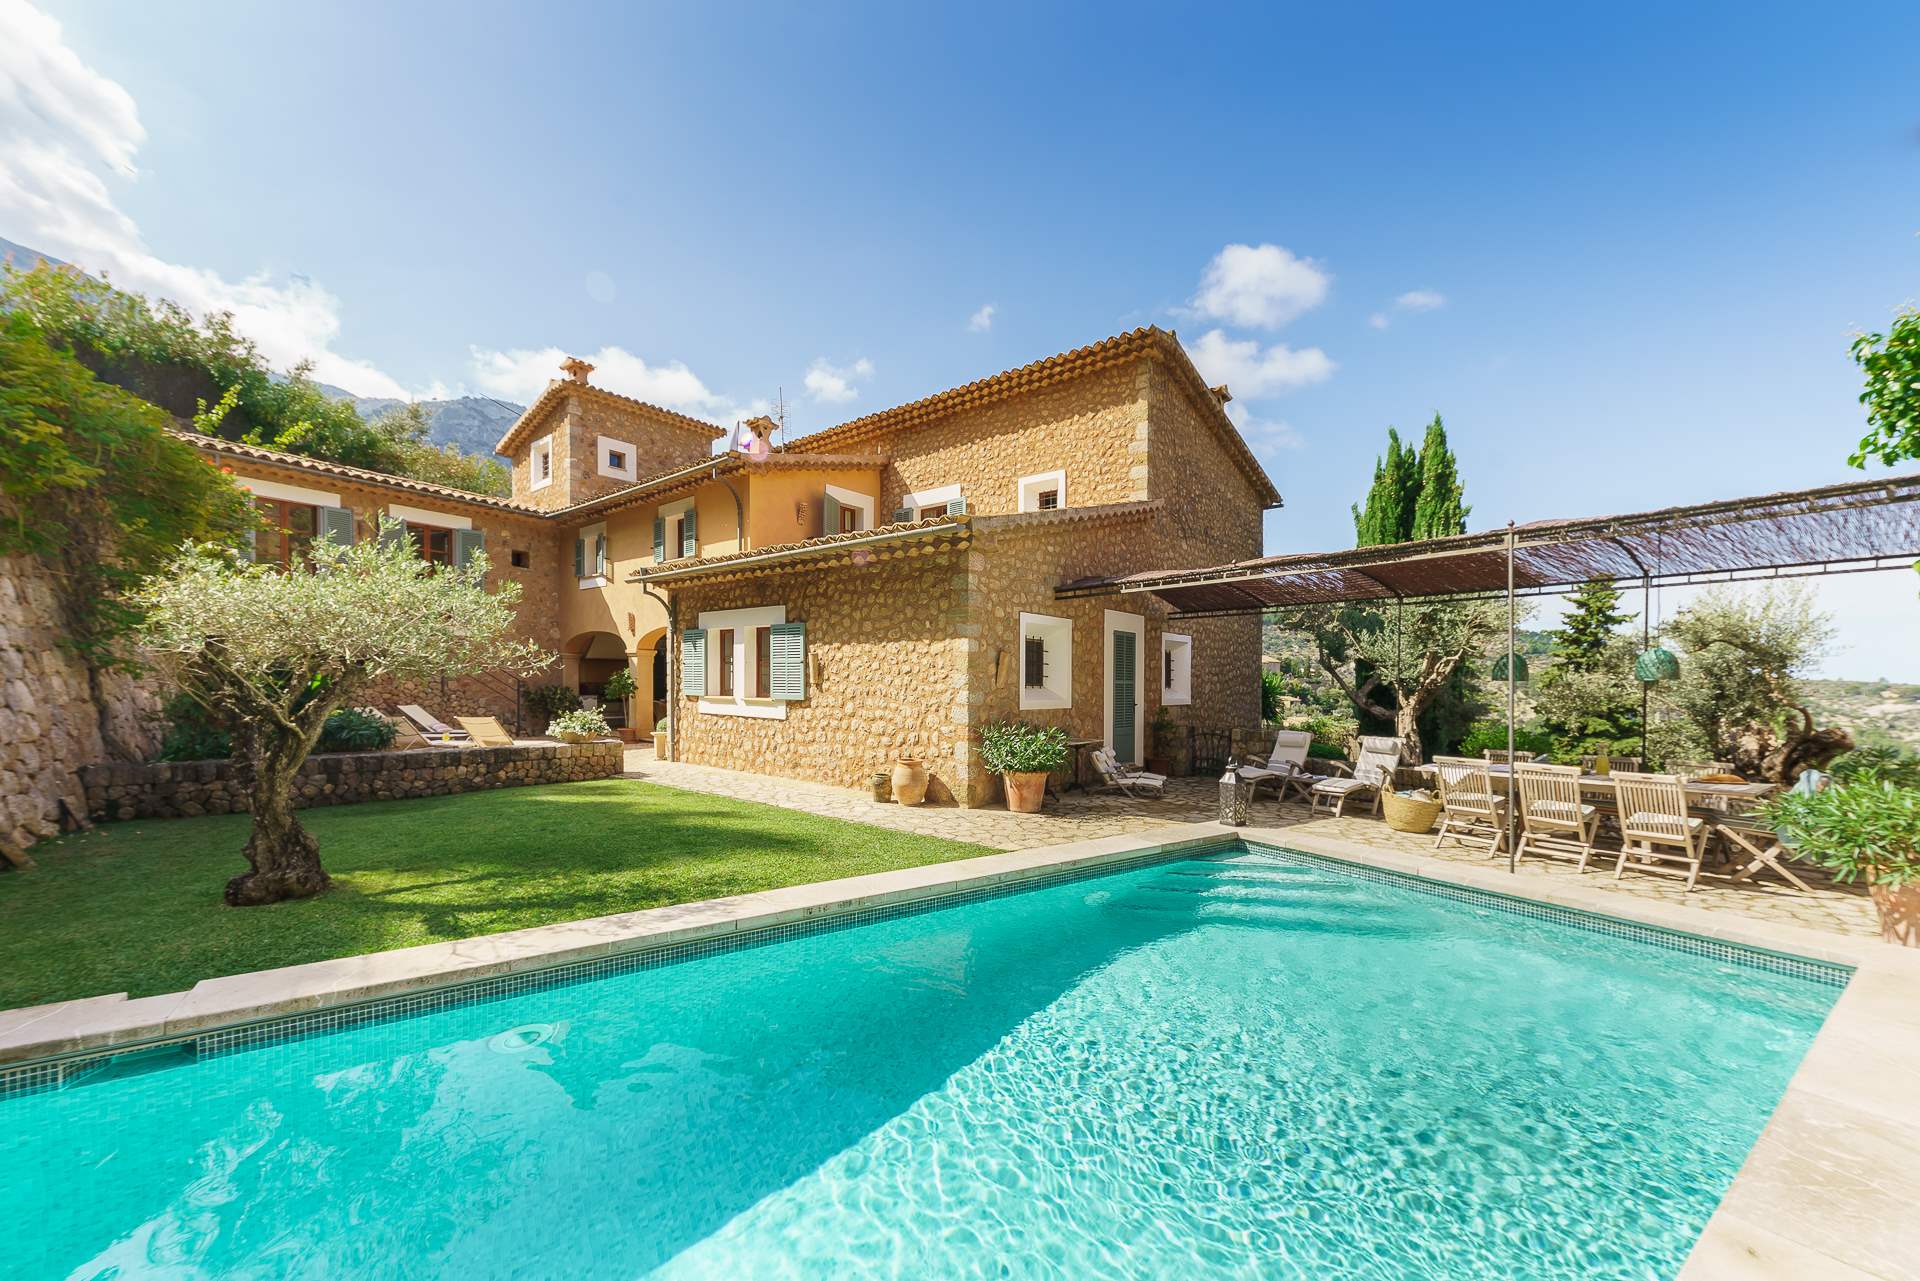 Sa Tanca, 4 Bedroom Rental, 4 bedroom villa in Soller & Deia, Majorca